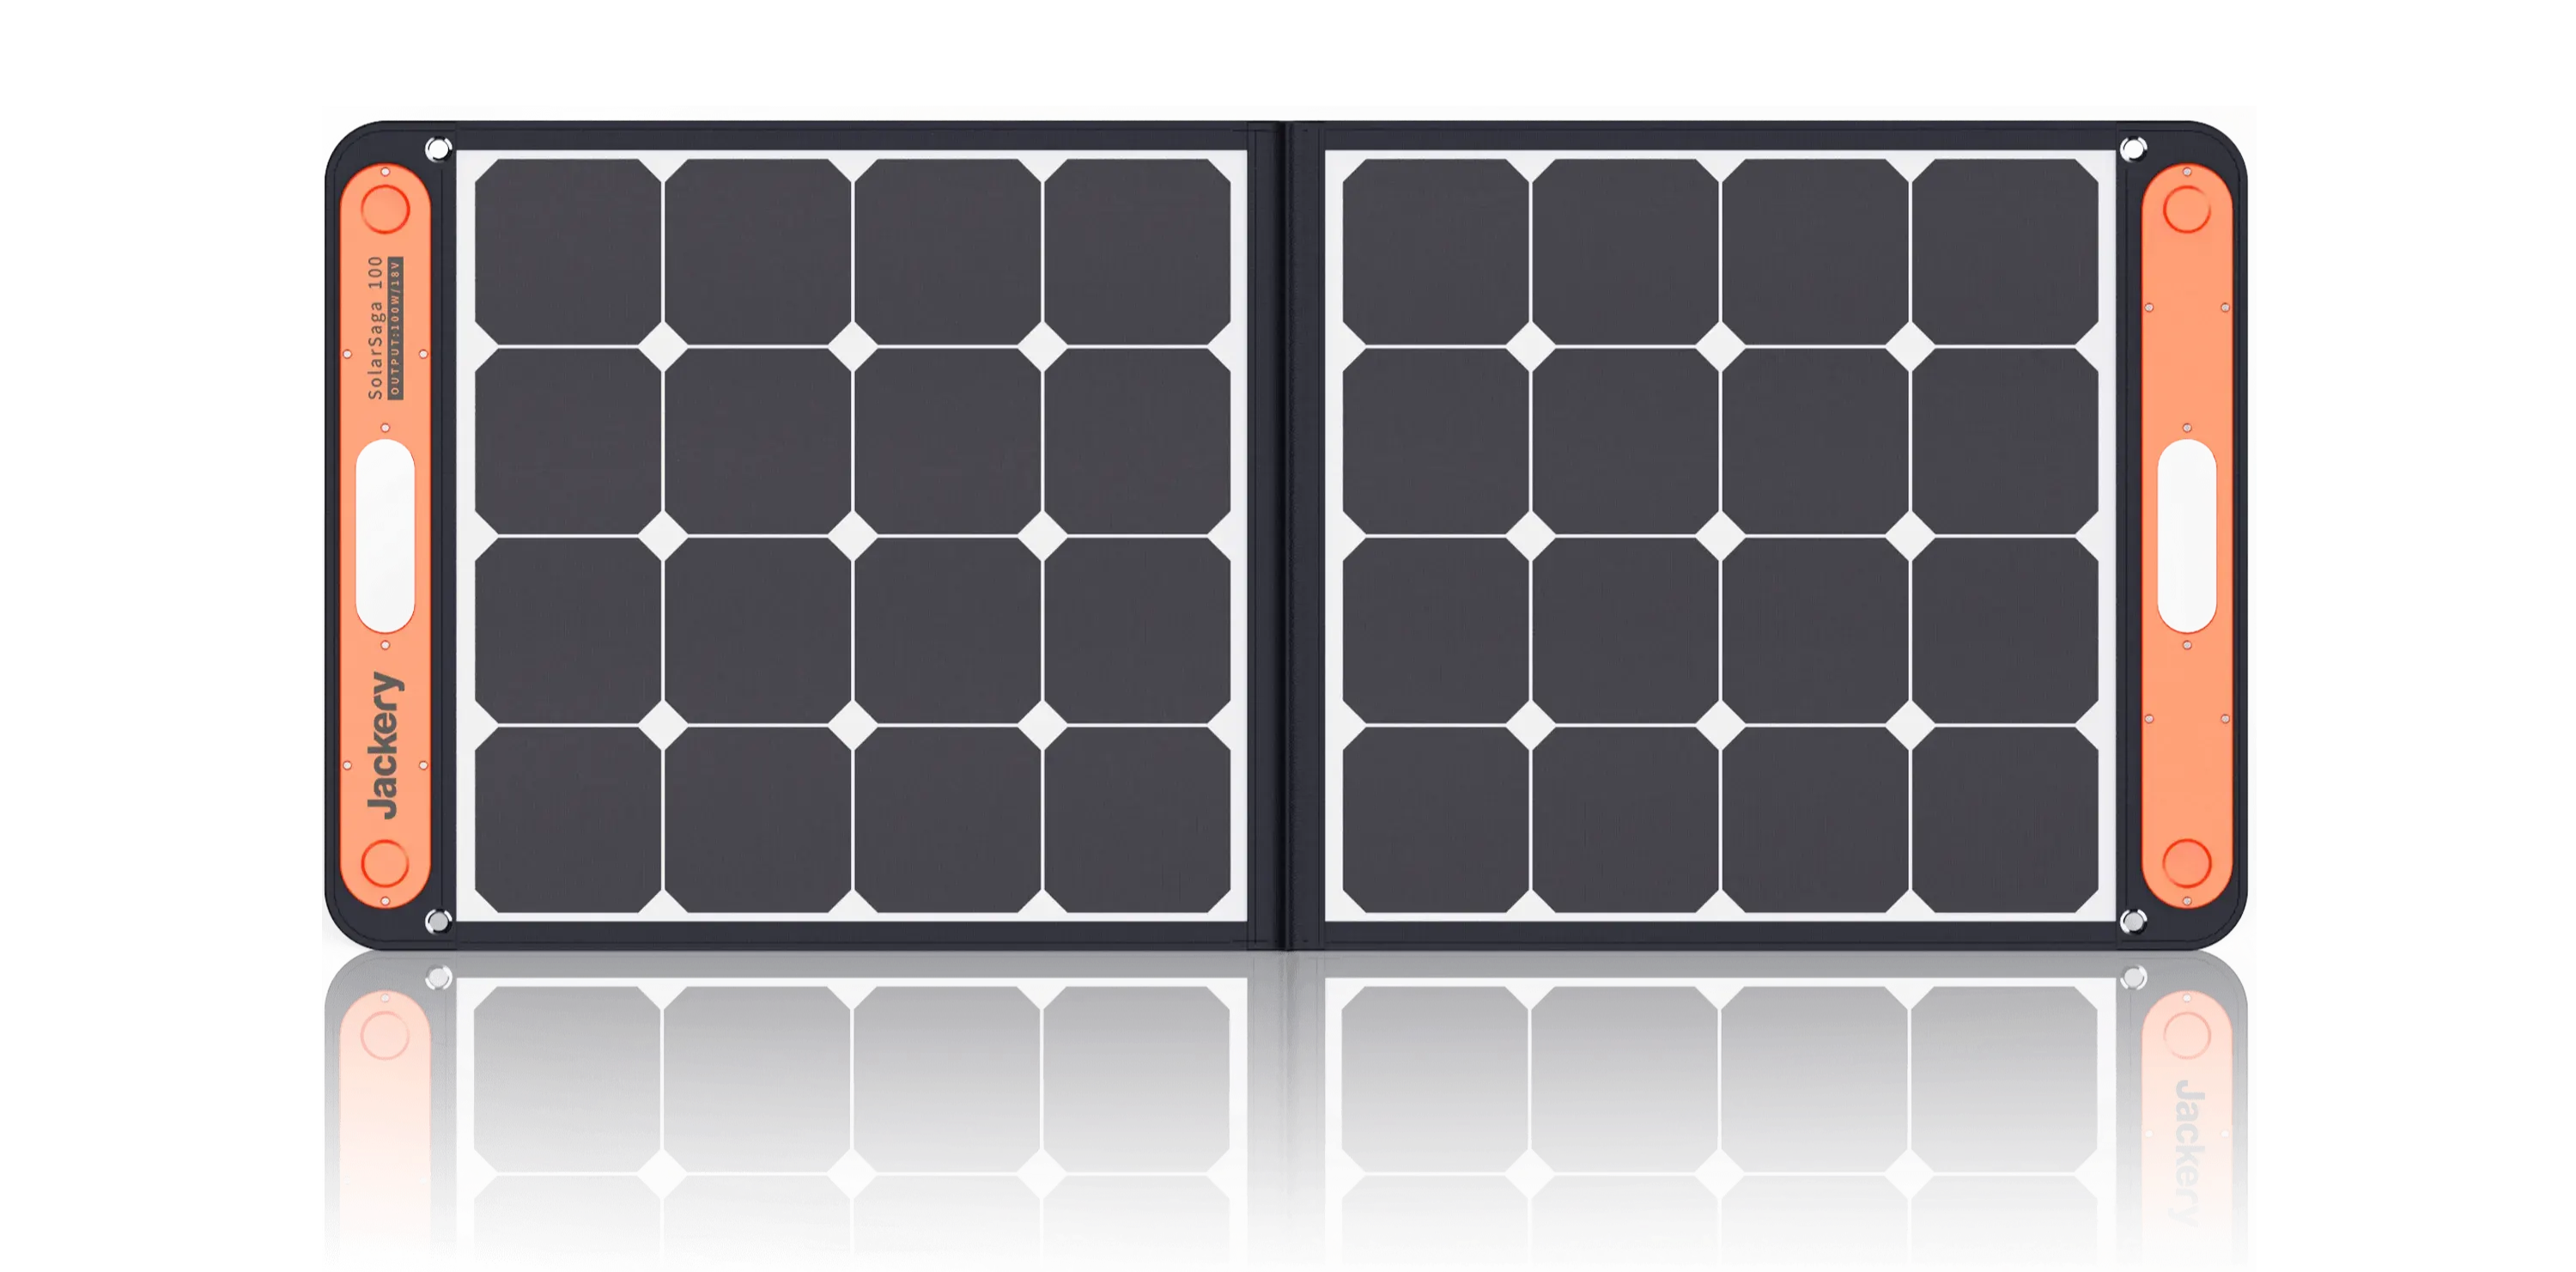 ソーラーパネルとは、太陽のエネルギーを電気に変える設備